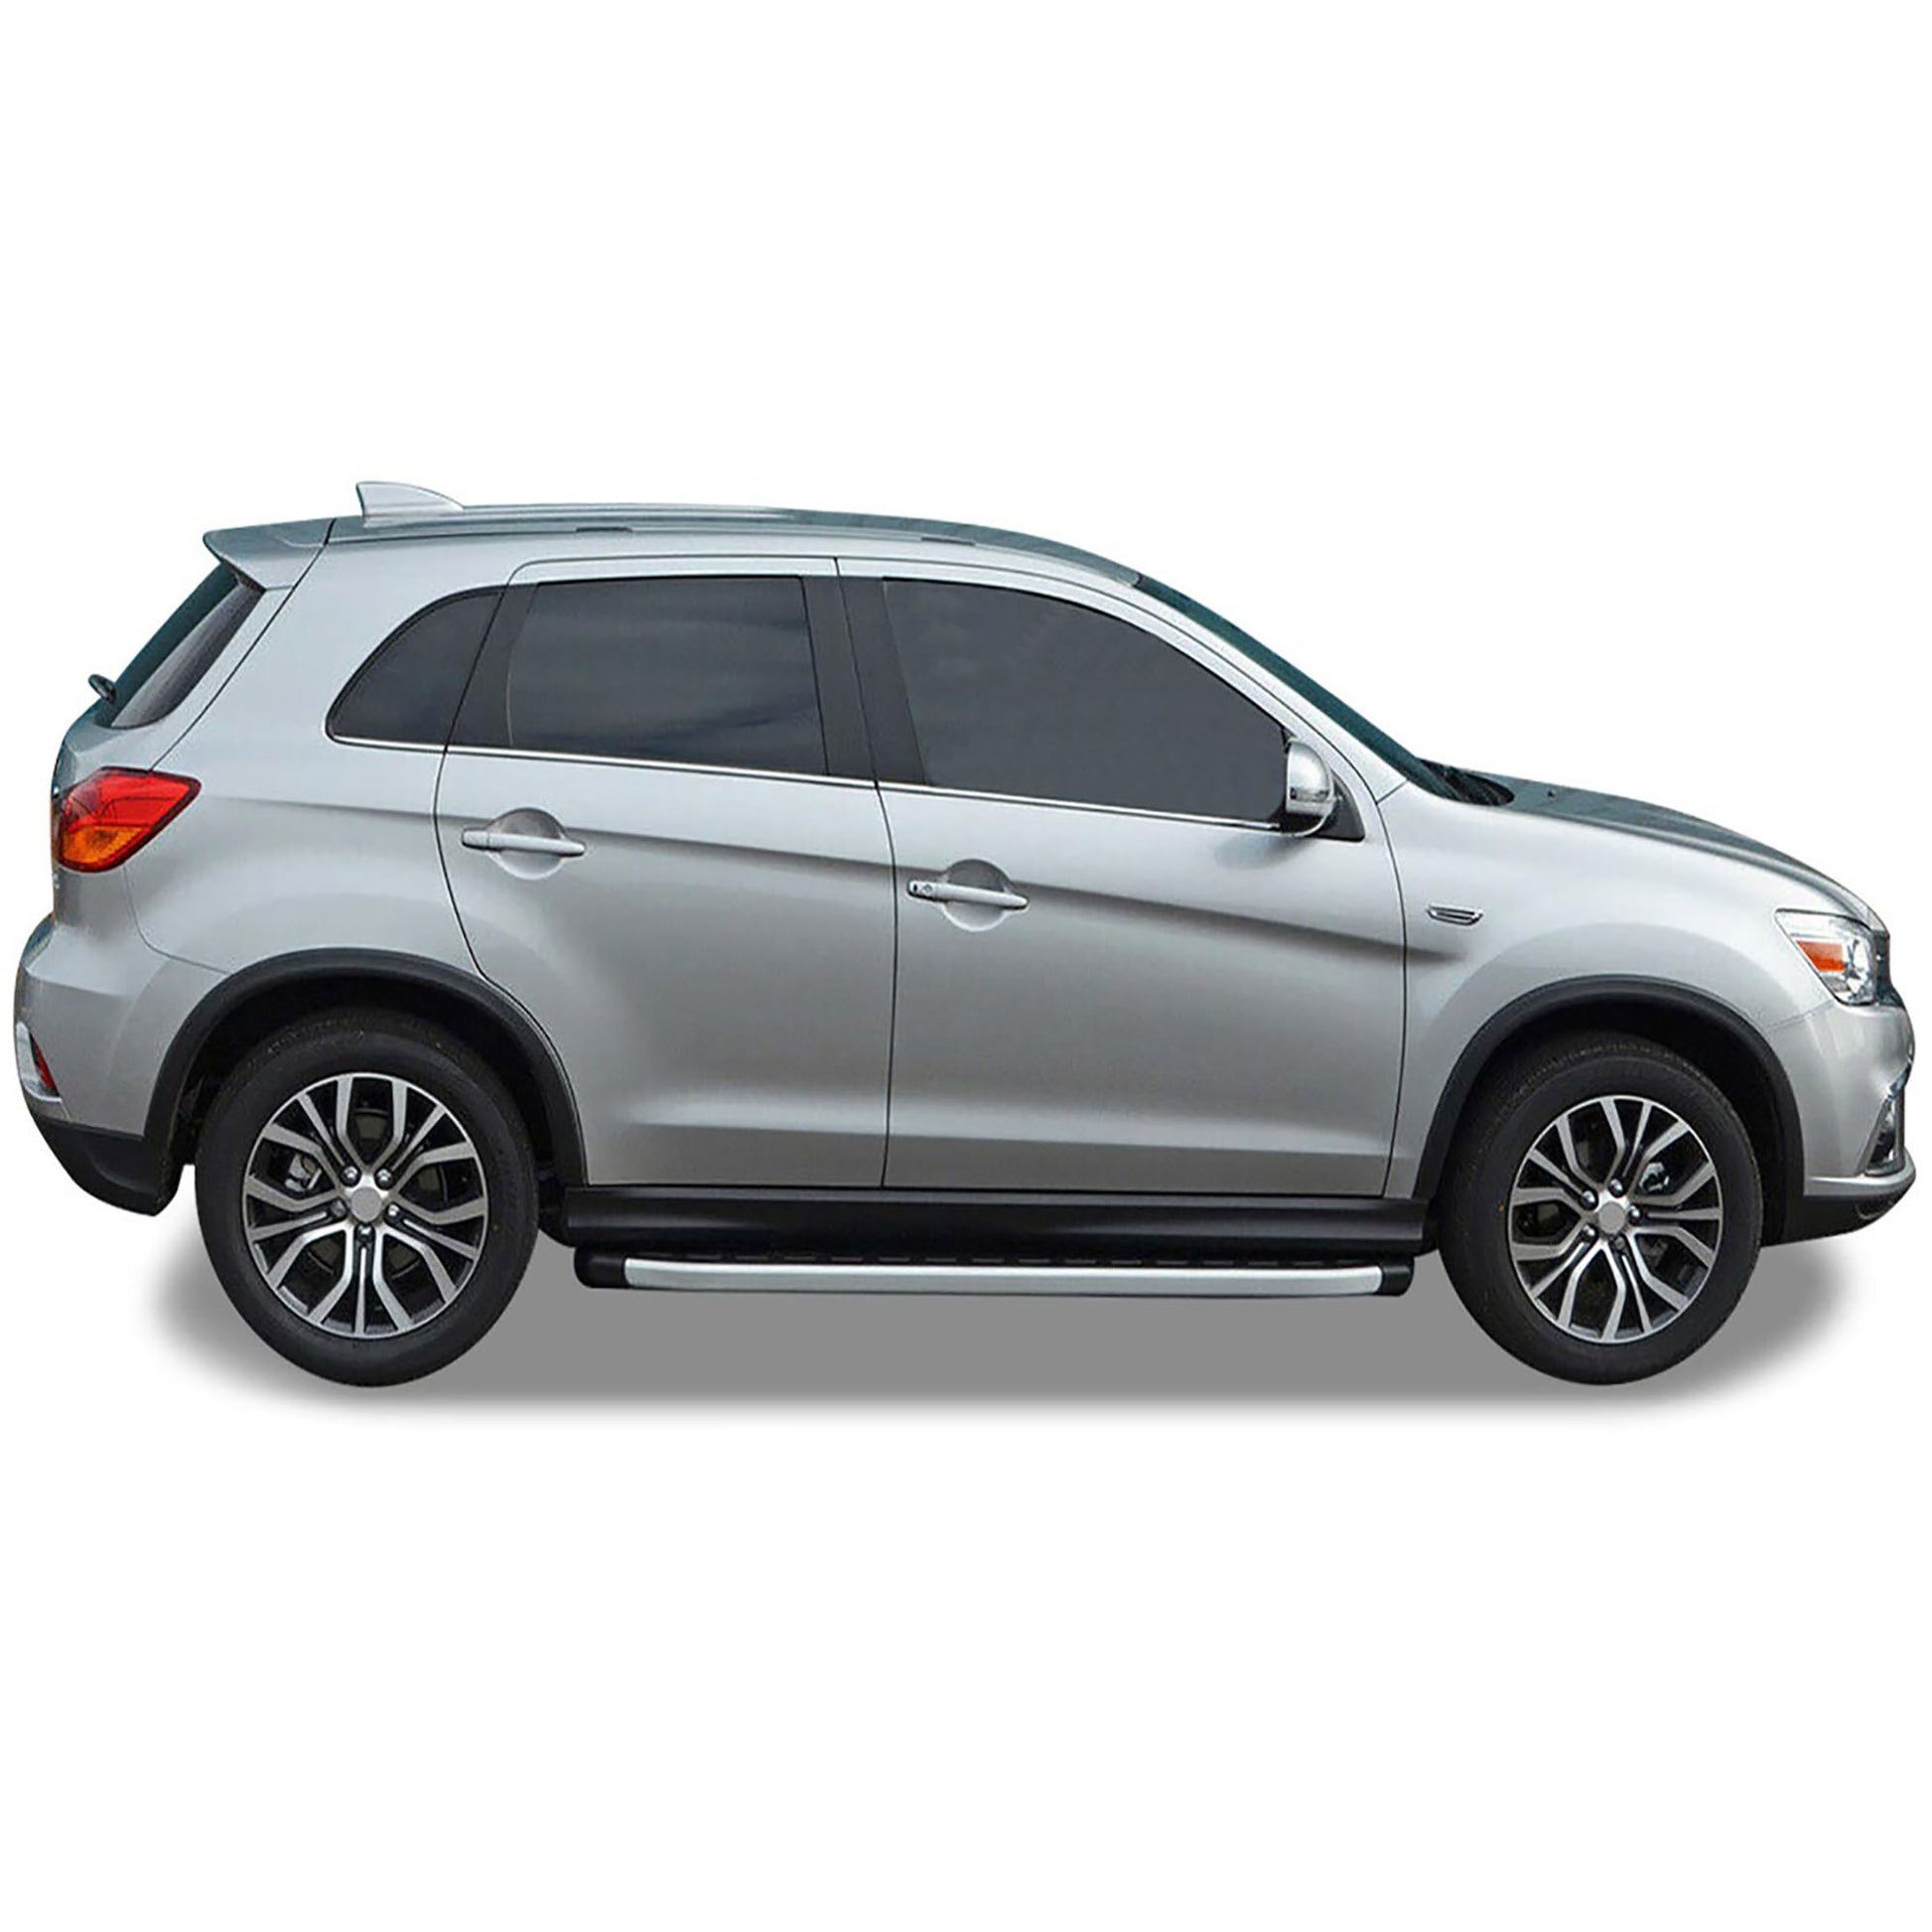 Hyundai Tucson Yan Basamak - Proside - Aluminyum Aksesuarları Detaylı Resimleri, Kampanya bilgileri ve fiyatı - 8